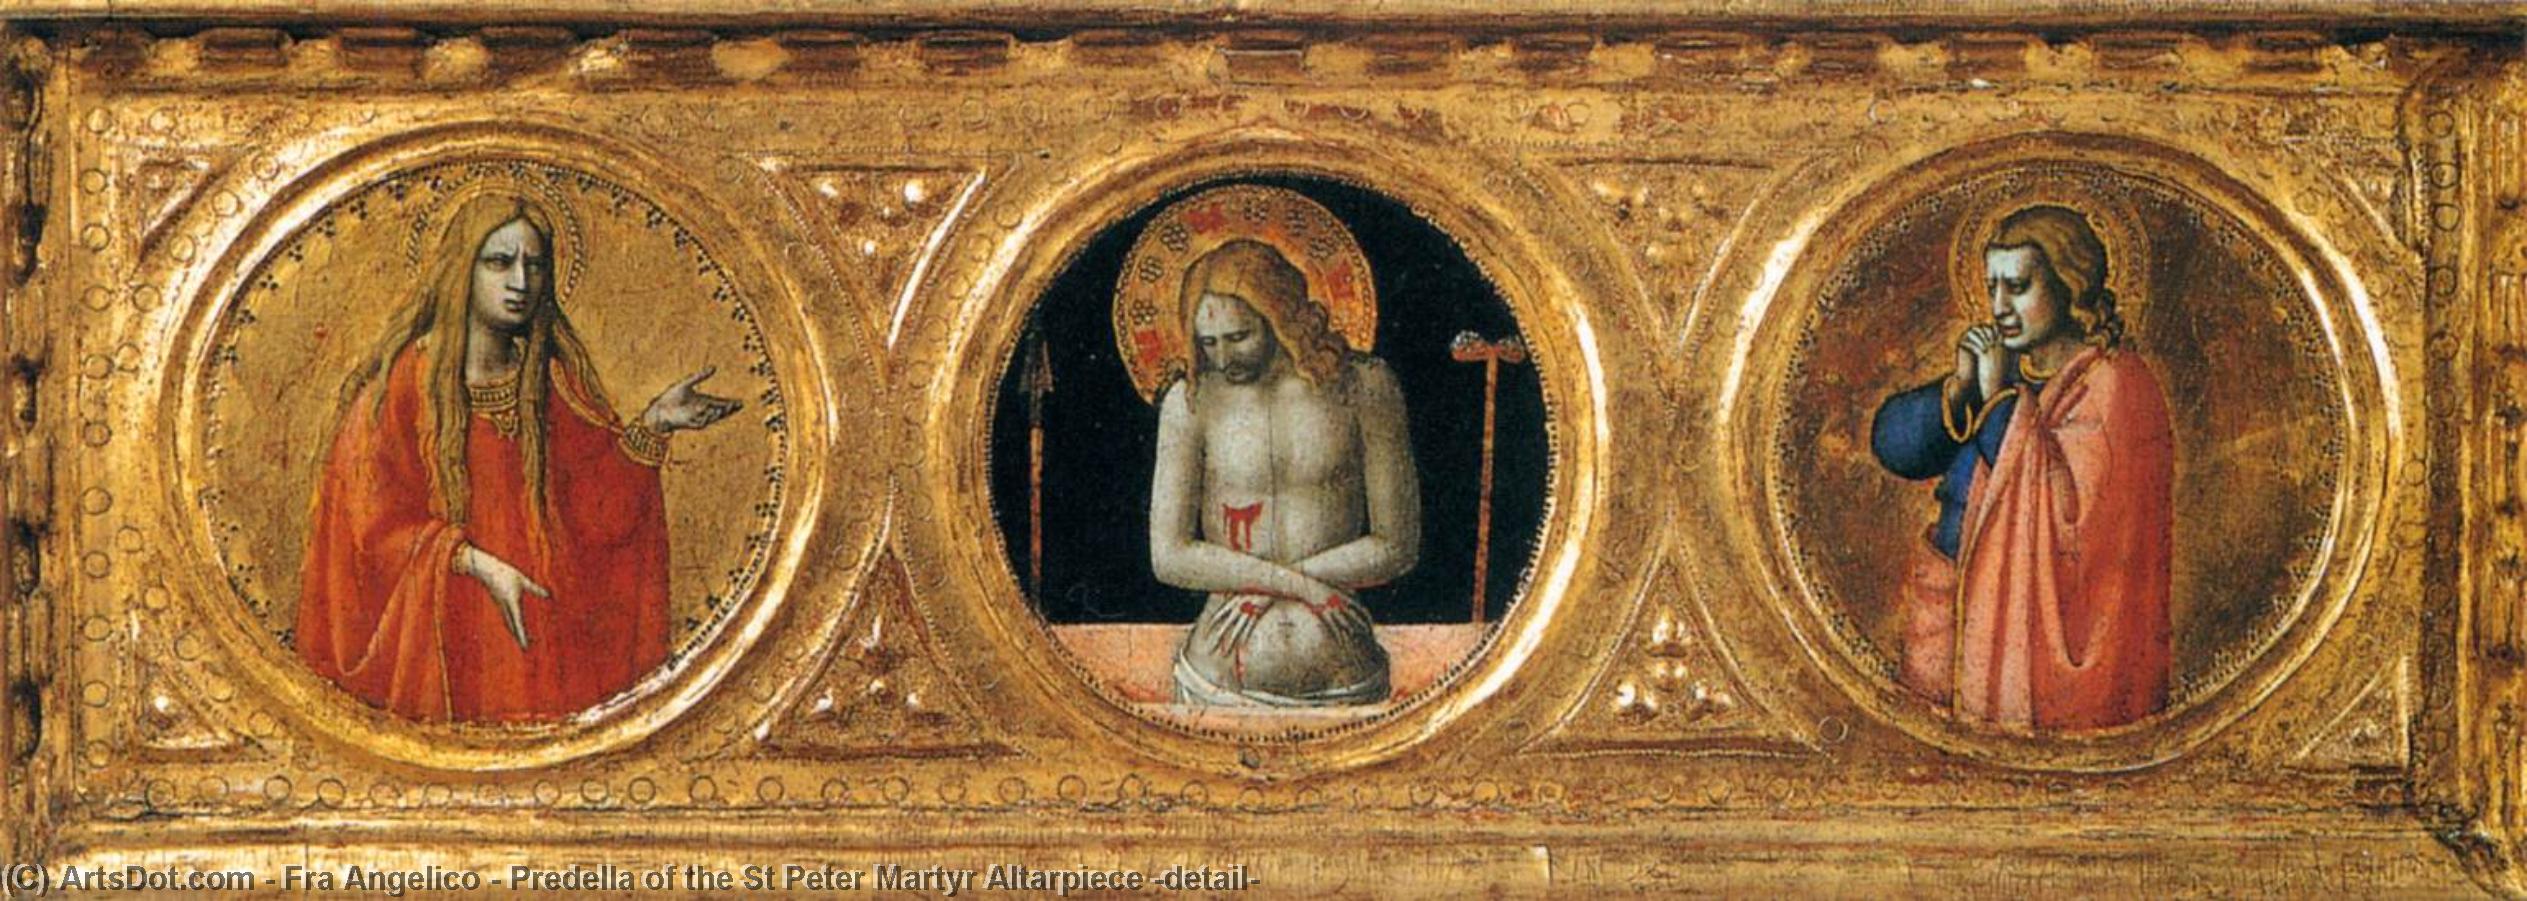 顺序 藝術再現 Predella of the St Peter Martyr Altargui (detail), 1427 通过 Fra Angelico (1395-1455, Italy) | ArtsDot.com